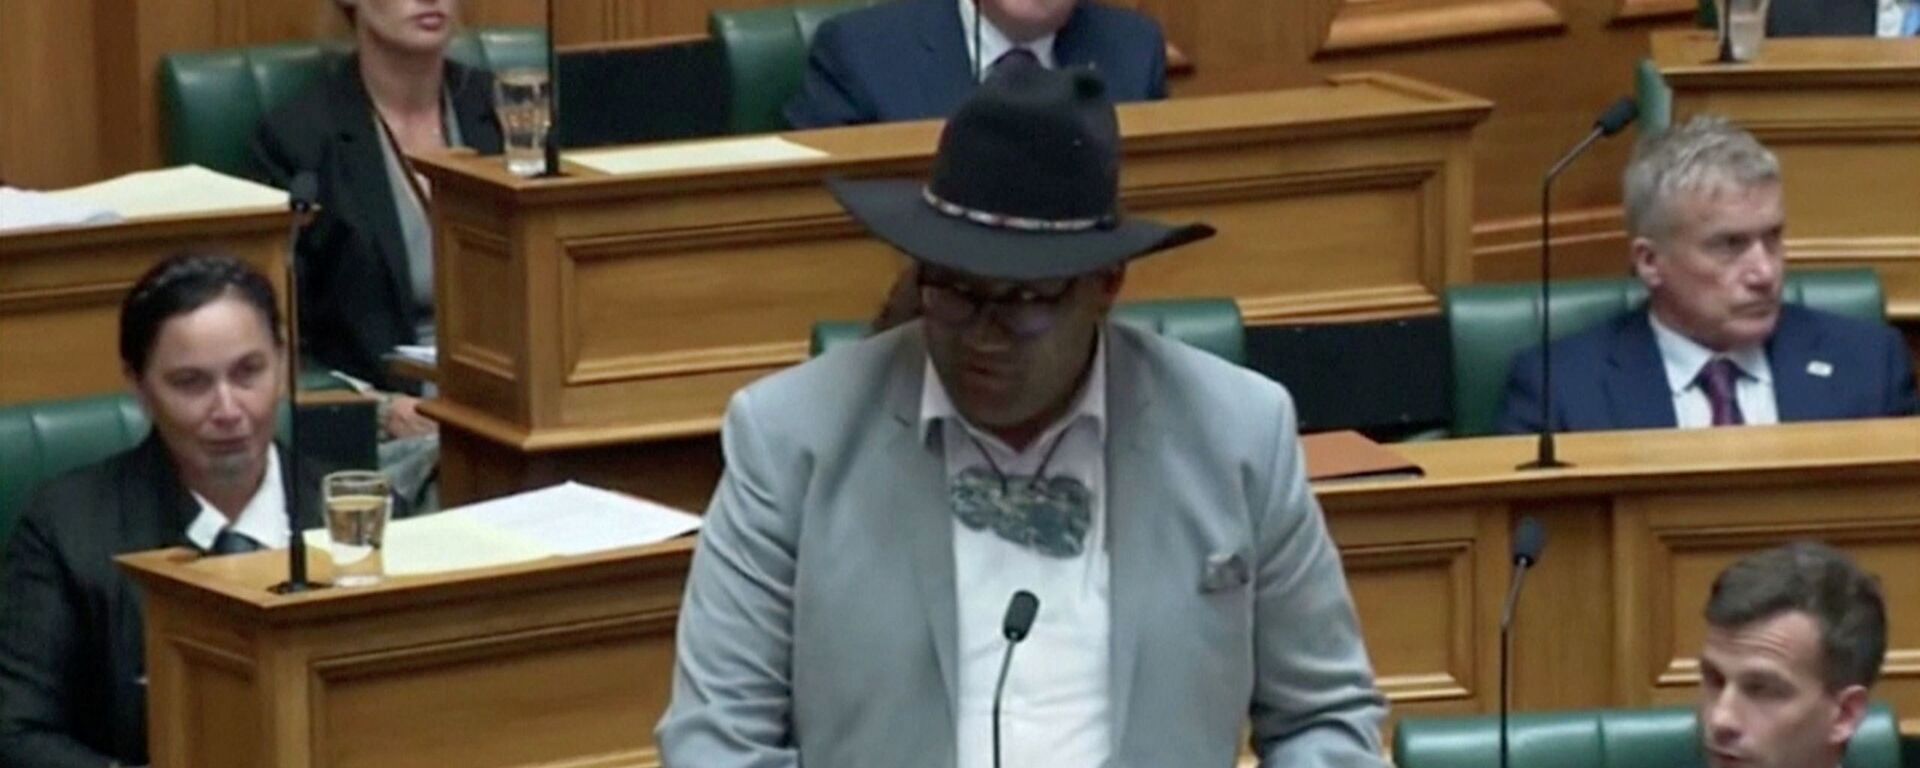 Yeni Zelanda'da kravat krizi: Parlamento Başkanı Trevor Mallard, Maori Partisi Eşbaşkanı Rawiri Waititi'ye erkek milletvekillerinin soru sorabilmesi için kravat takması zorunluluğuna uymadığı gerekçesiyle genel kurulu terk etti. - Sputnik Türkiye, 1920, 11.02.2021